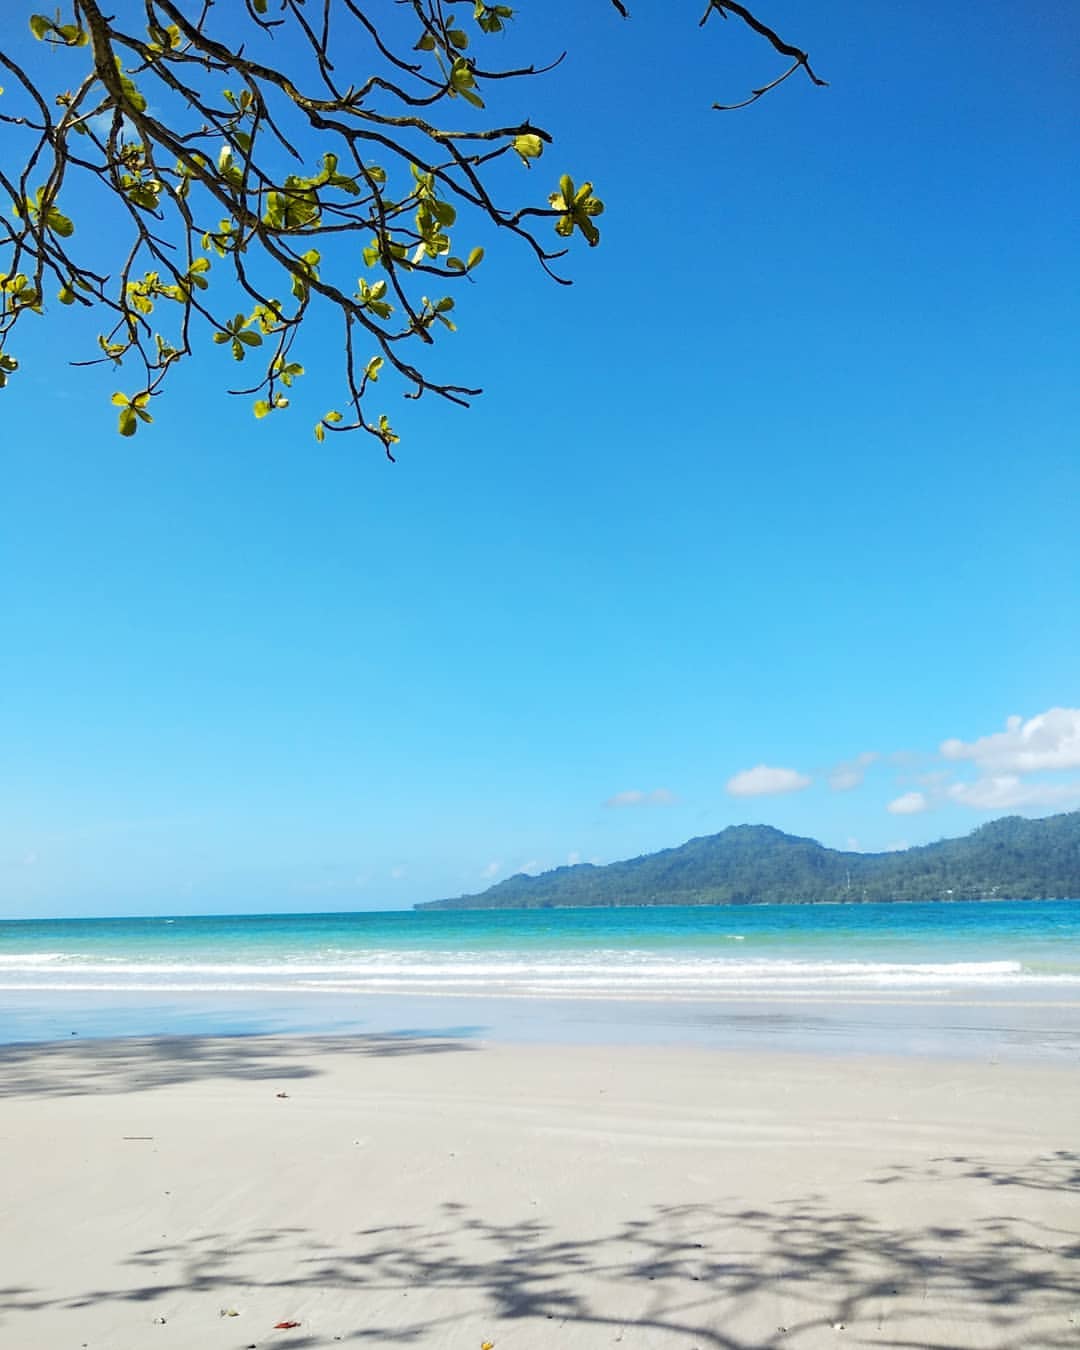 Pantai Natsepa yang Bikin Rindu di Maluku - Destinasi Travel Indonesia